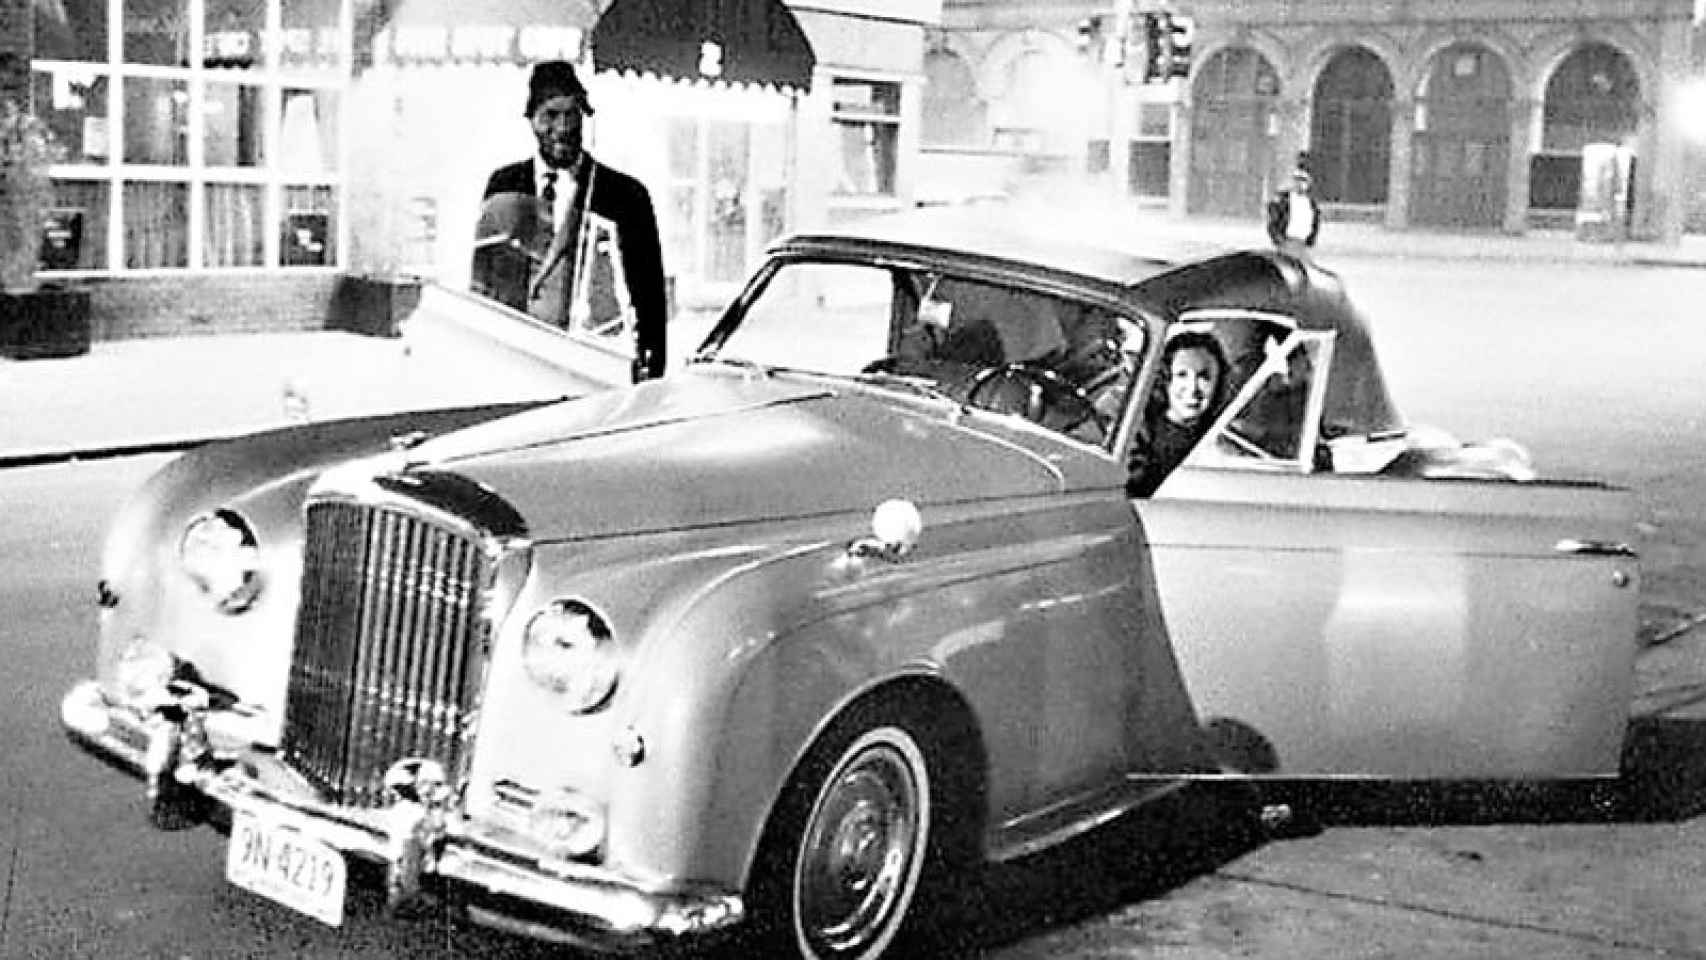 Mon y Pannonica, en el Bentley de ella, ante el The Five Spot Cafe (1964).